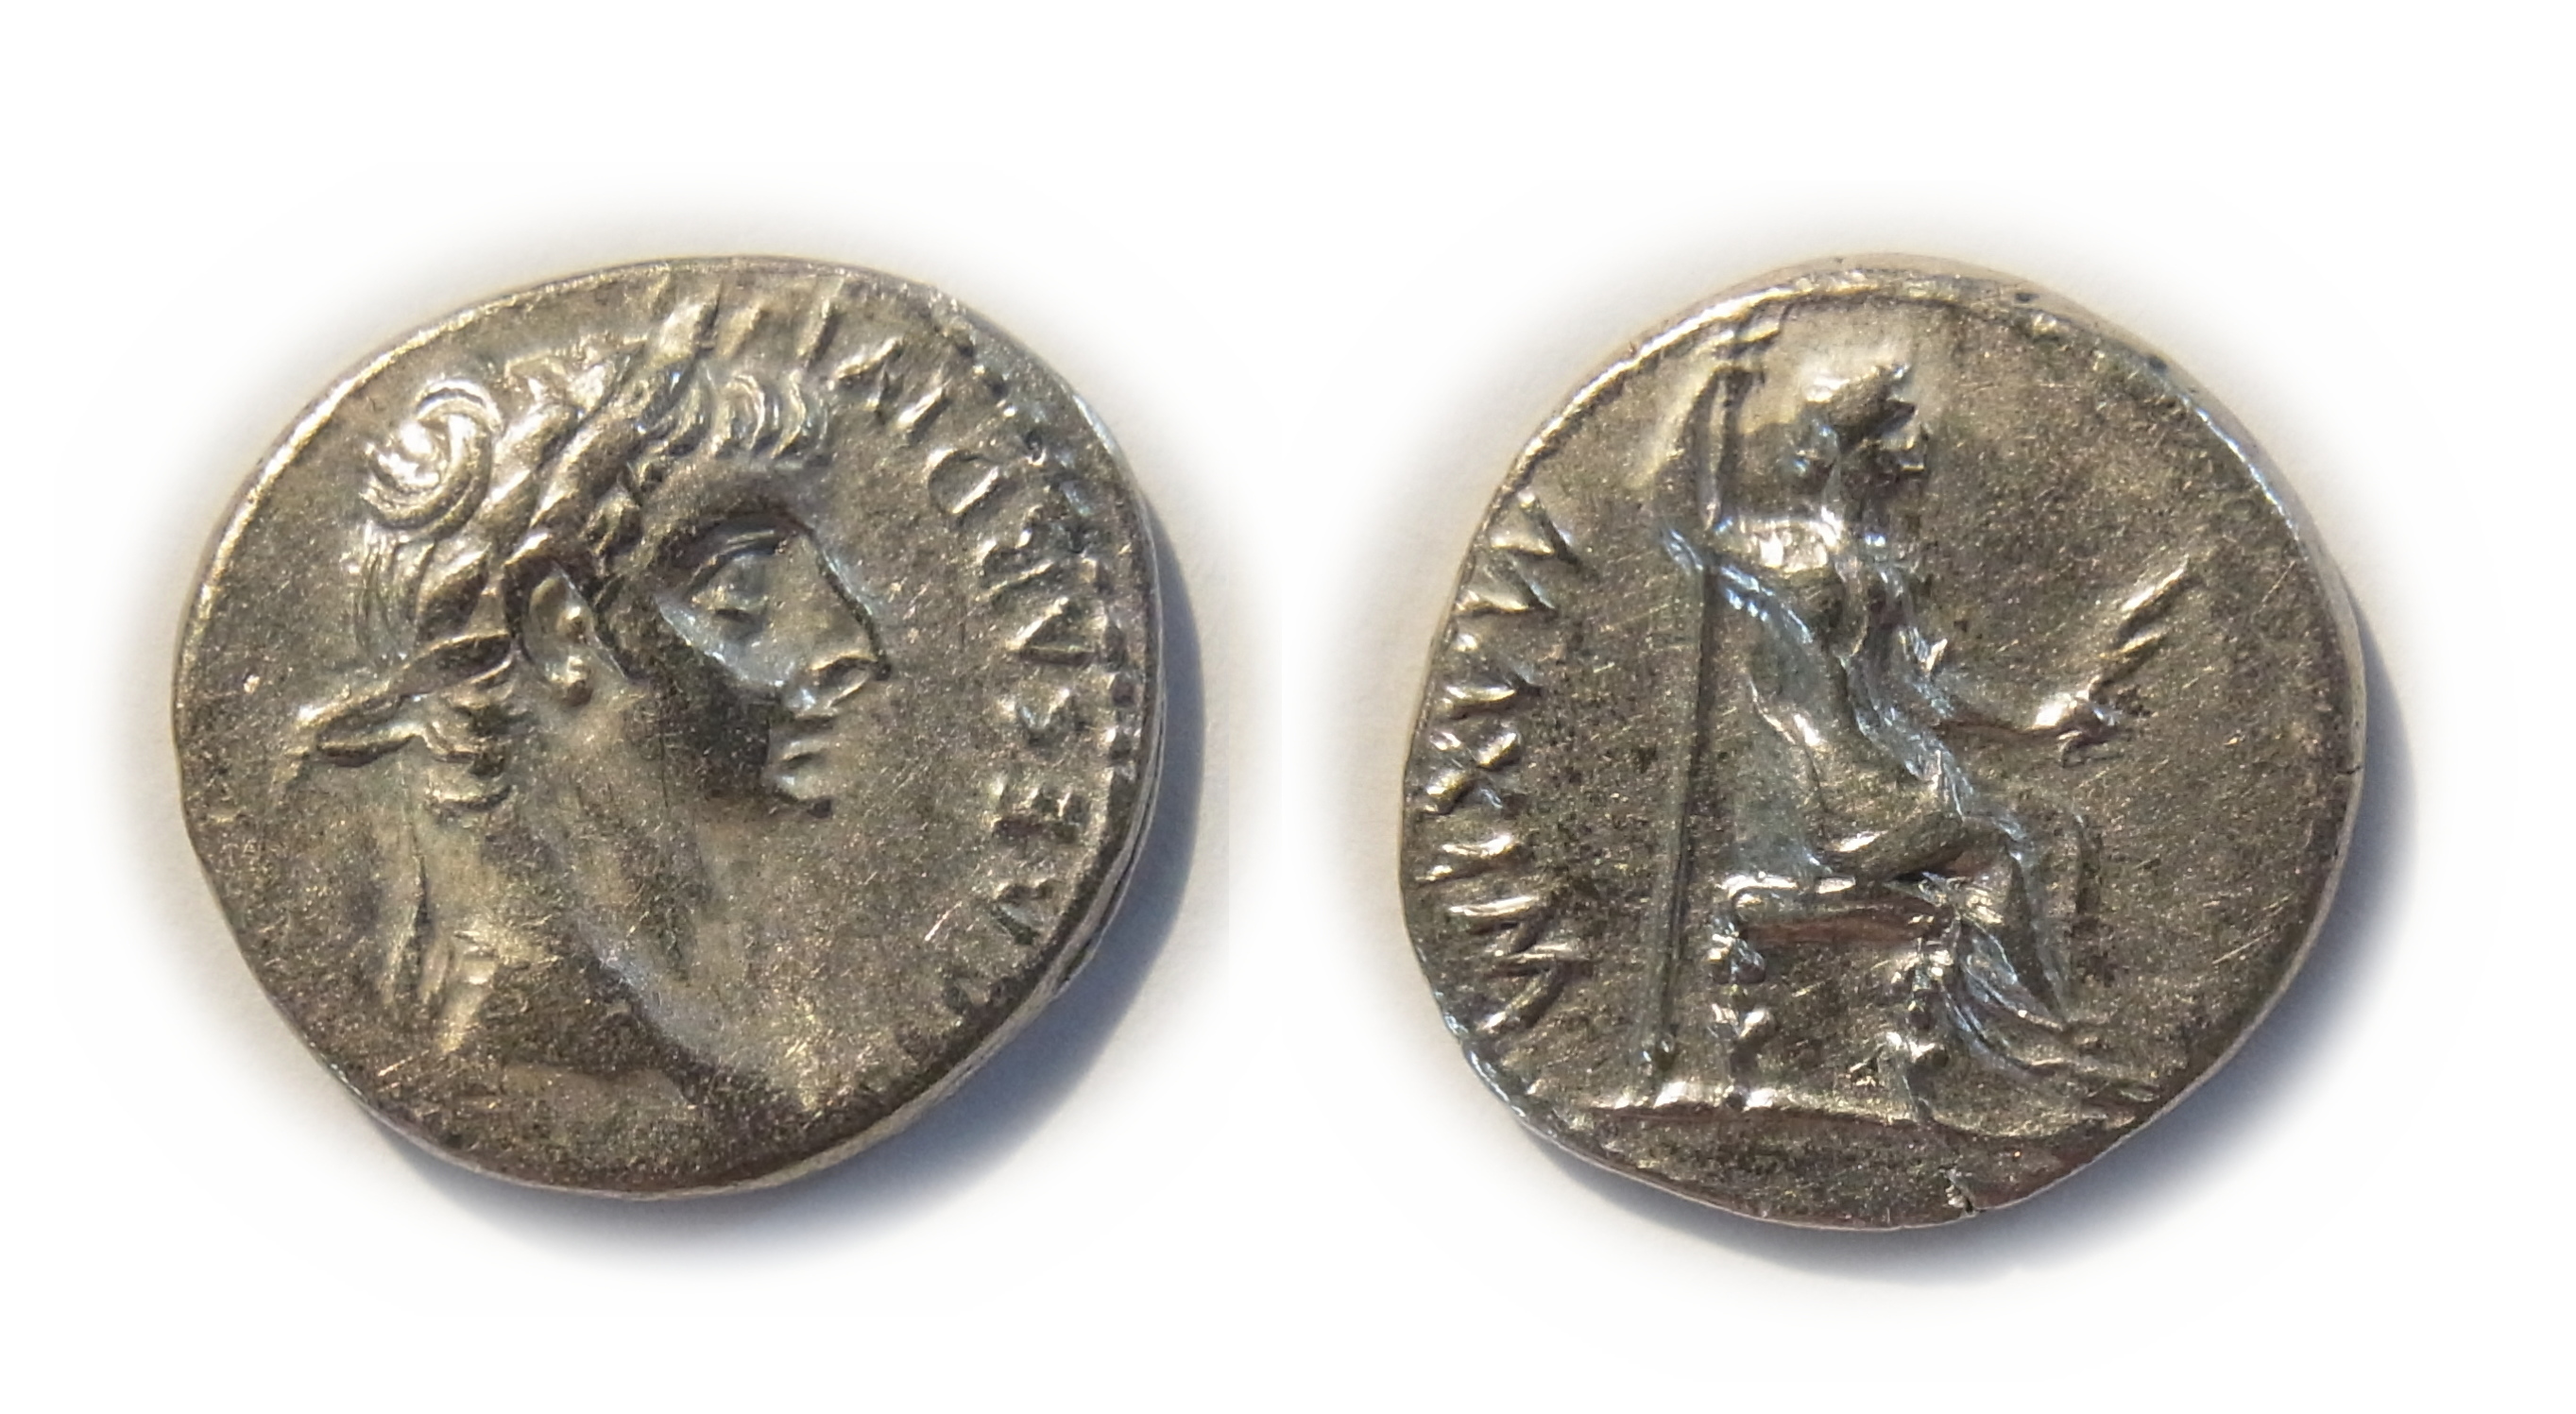 Silver coin, Roman Empire, Denarius, Tiberius Caesar Augustus, Roman emperor